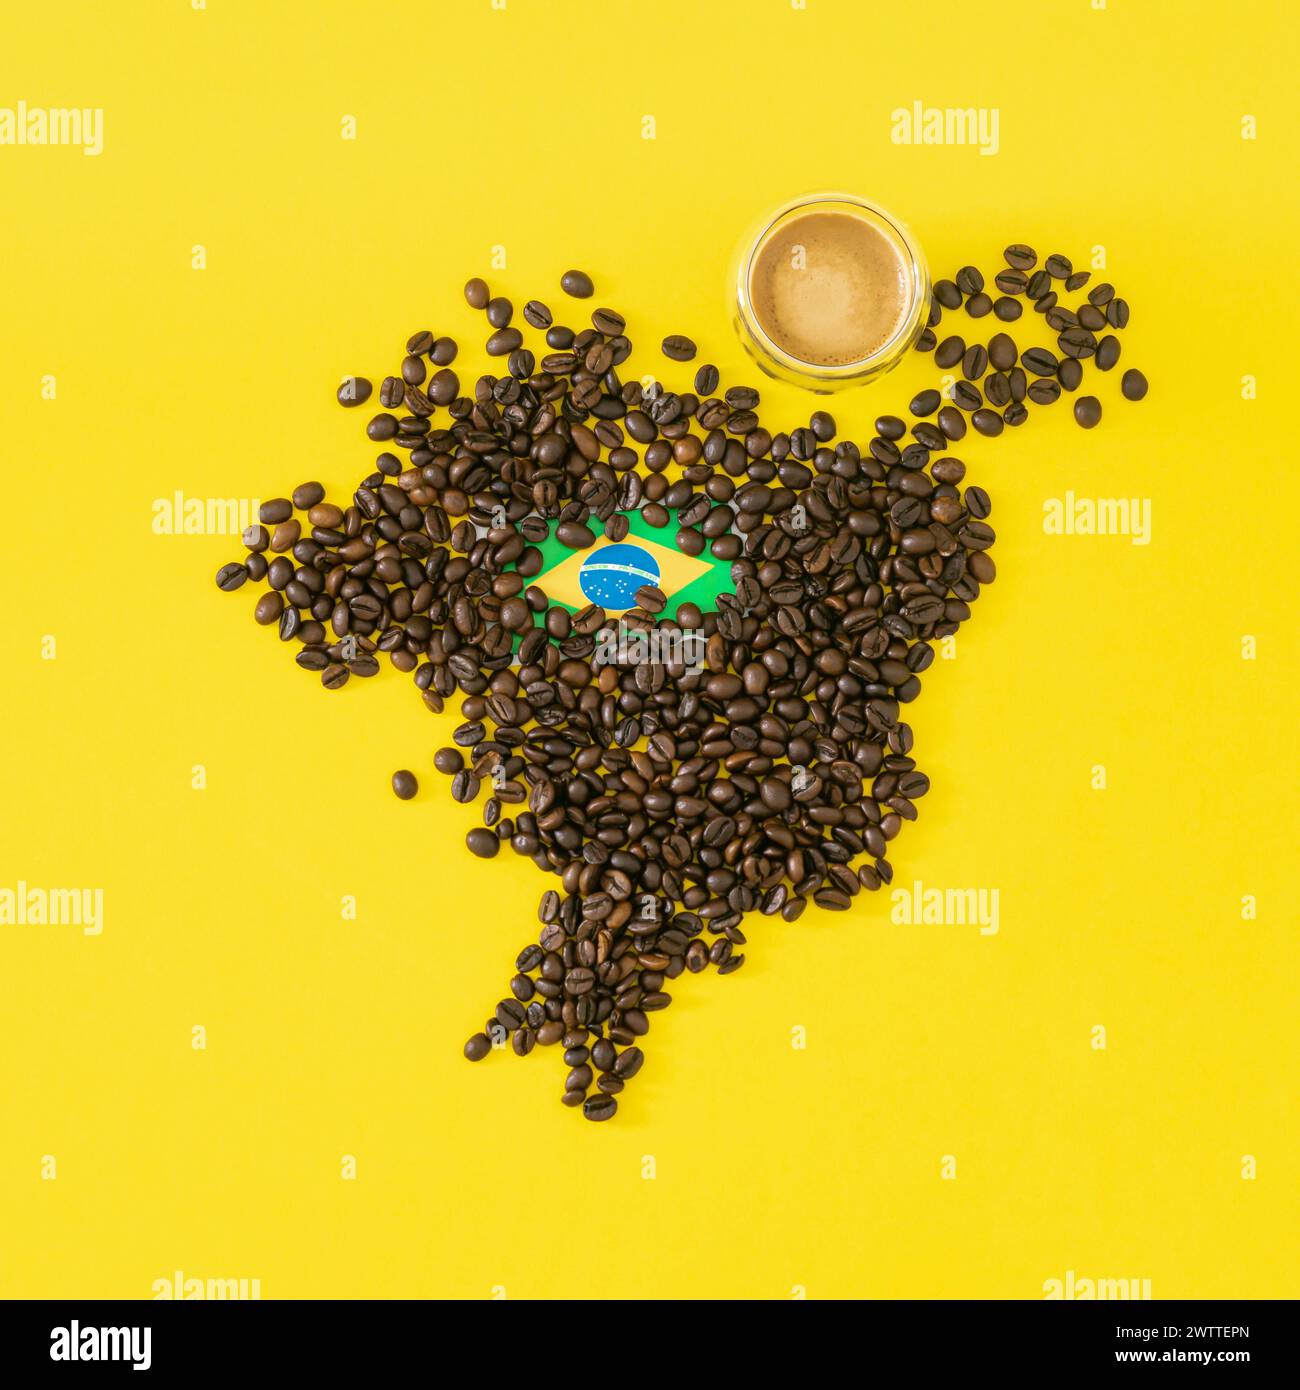 Composition créative faite avec tasse de café, carte du Brésil faite avec des grains de café torréfiés et drapeau brésilien sur fond jaune. Disposition minimale. Banque D'Images